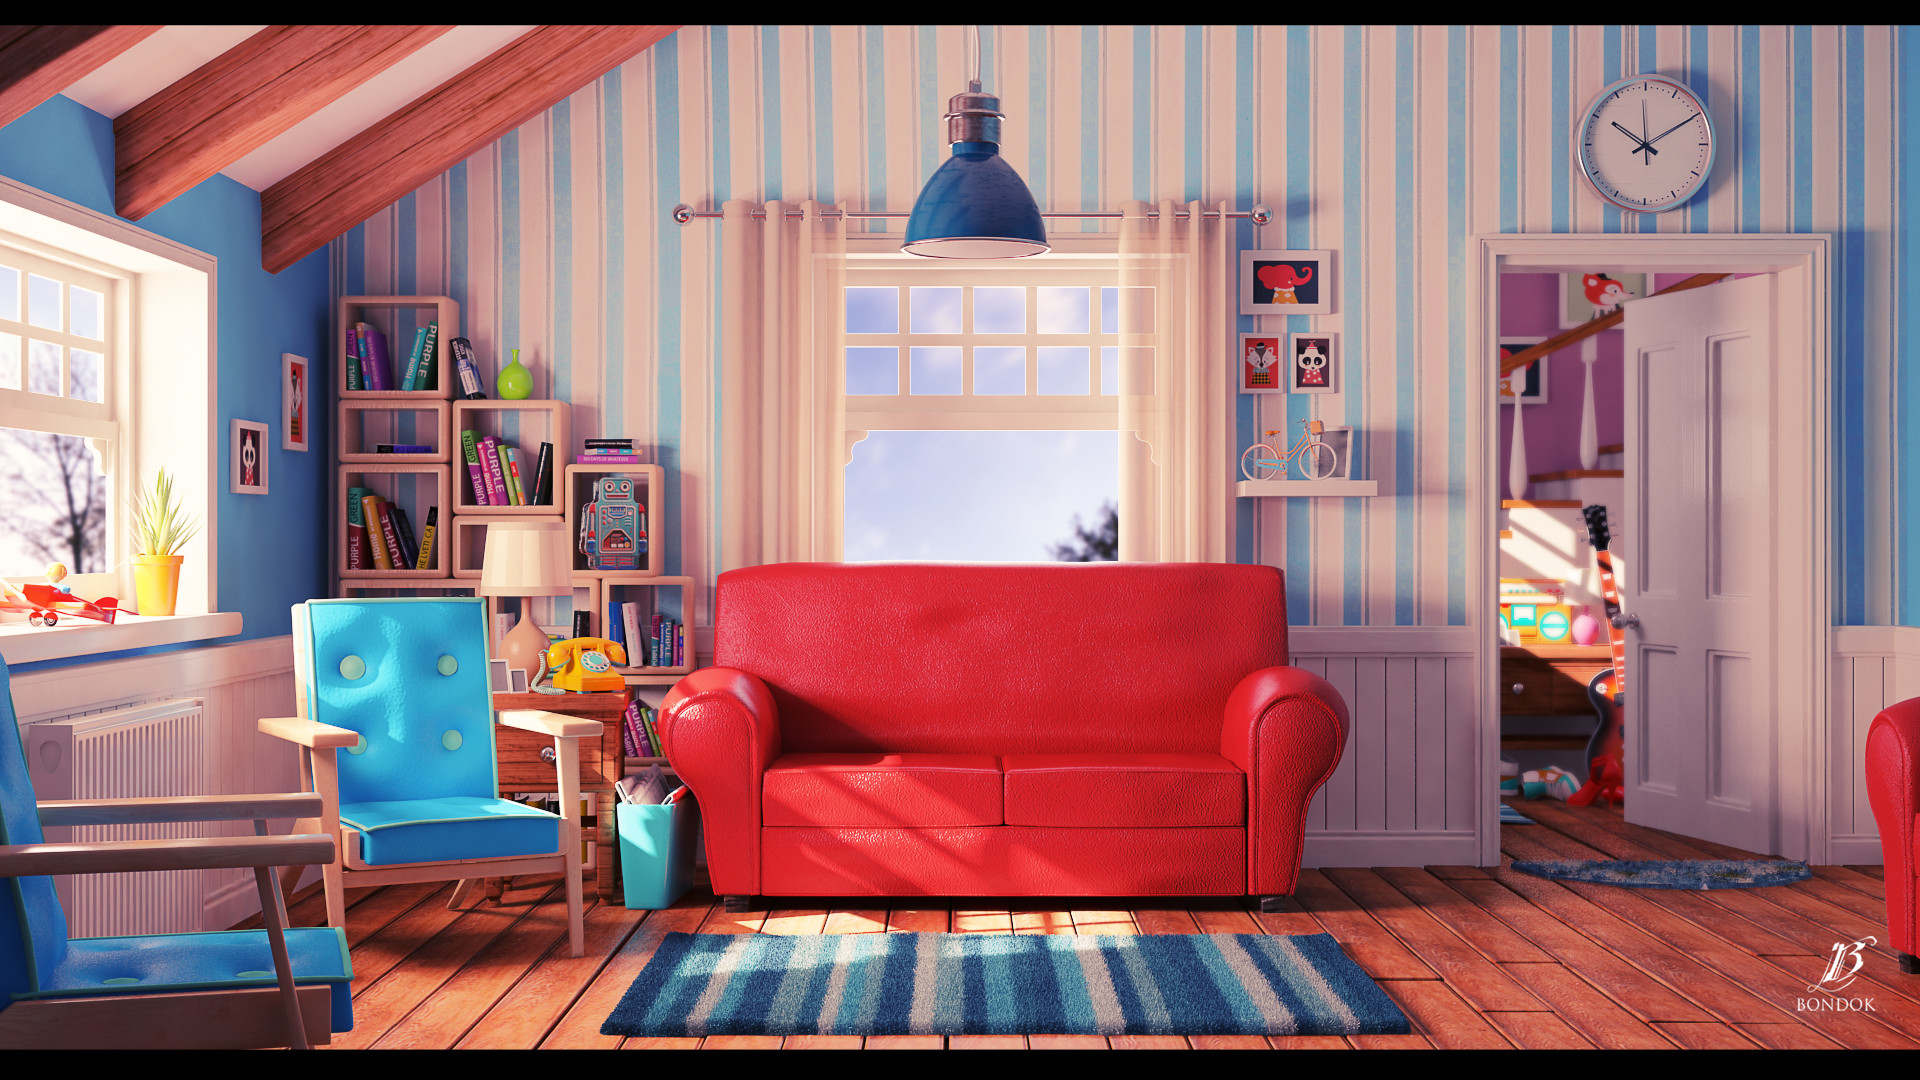 ArtStation - Cartoon living room, Bondok Max